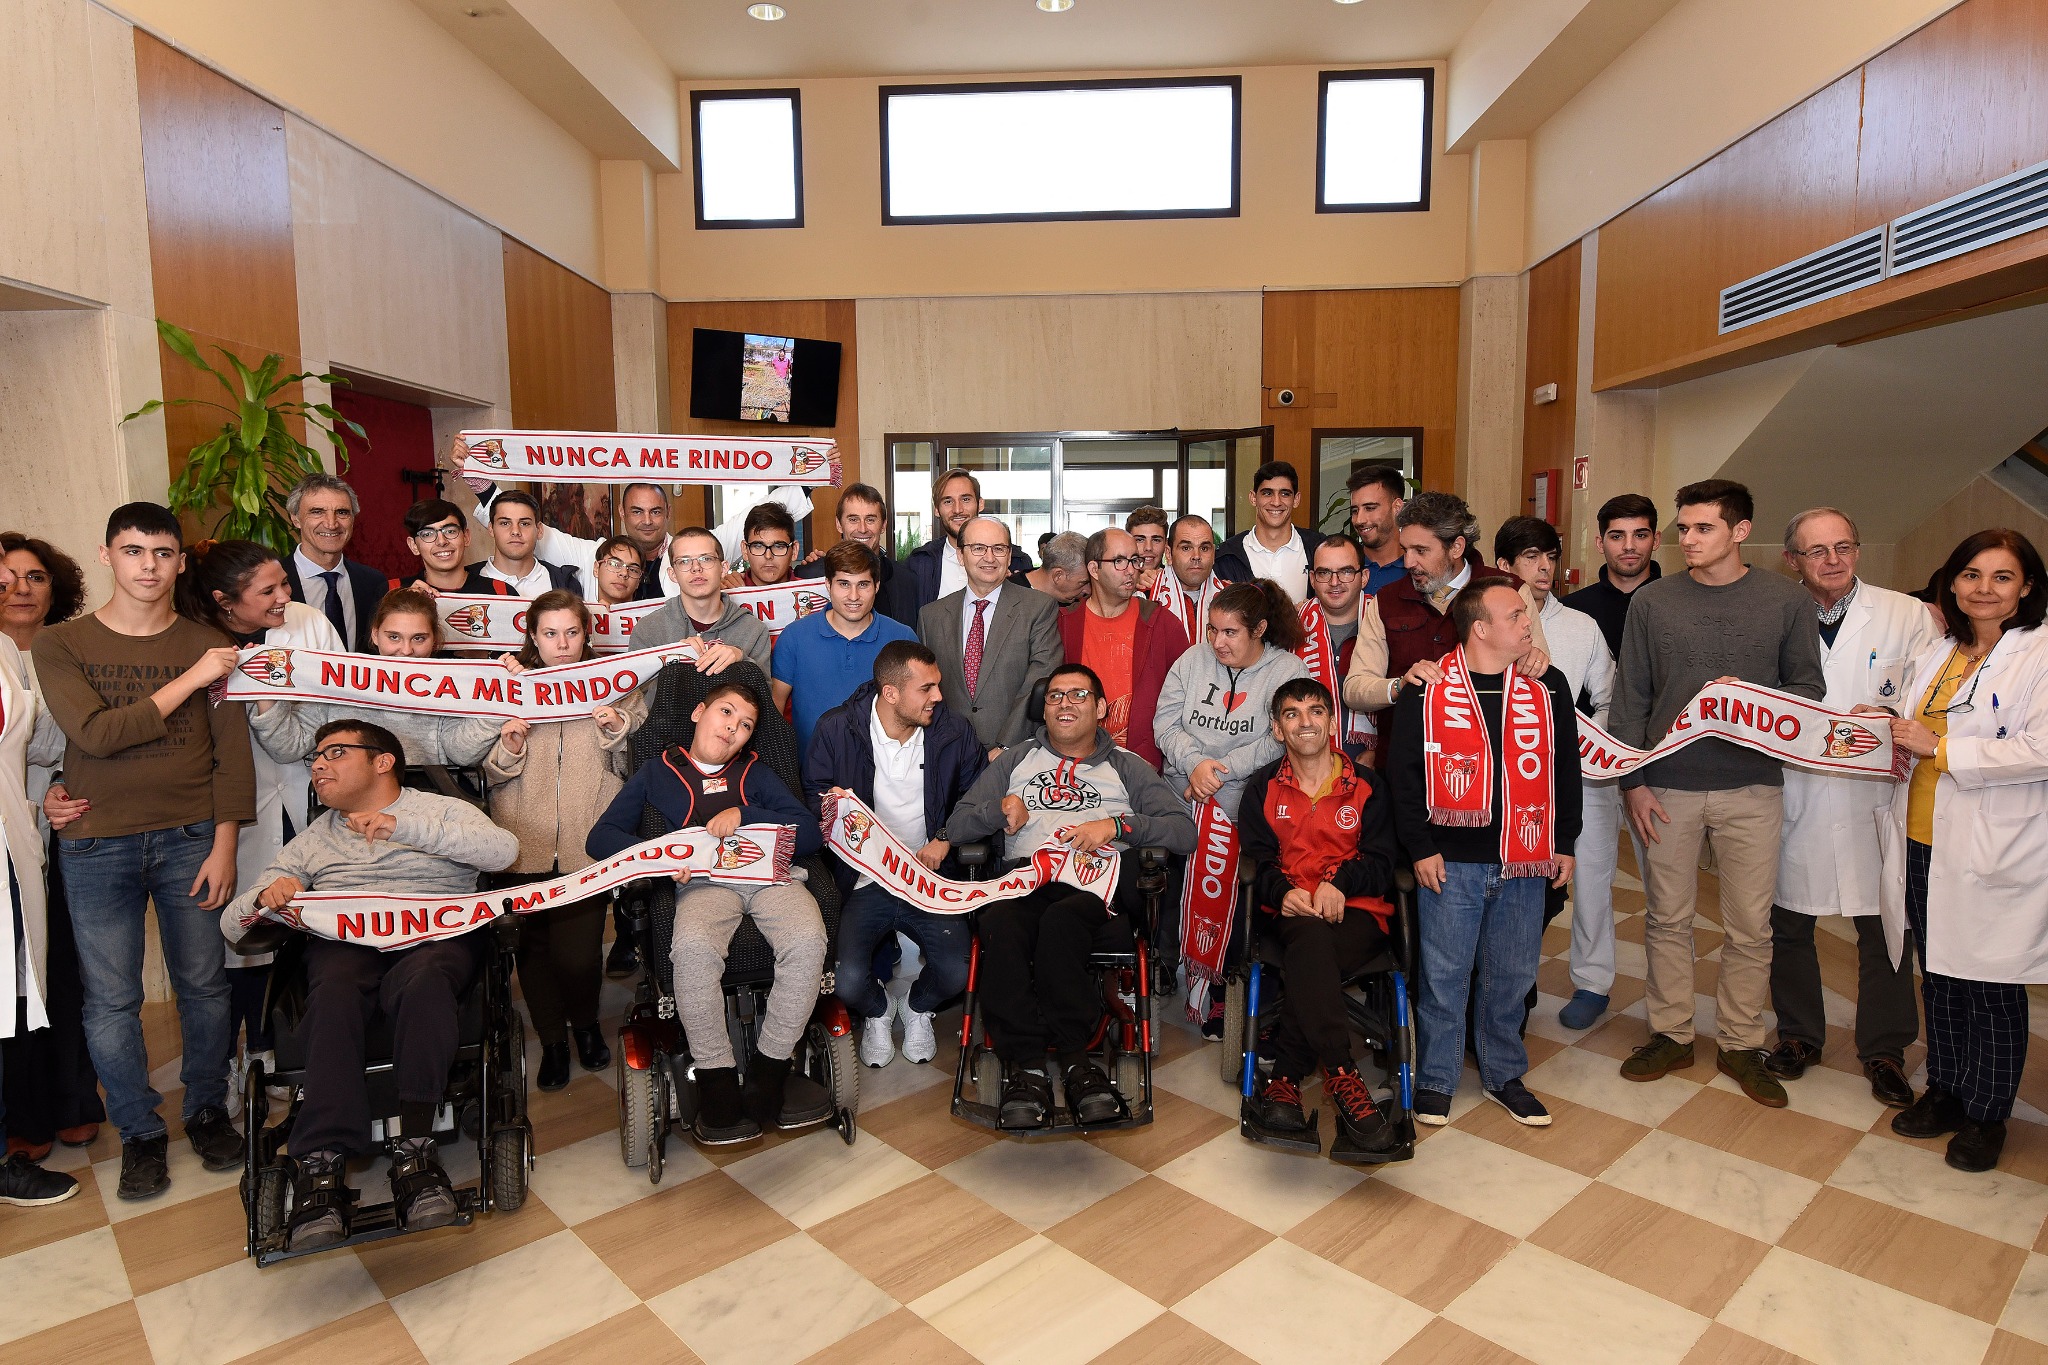 Sevilla FC's visit to San Juan de Dios